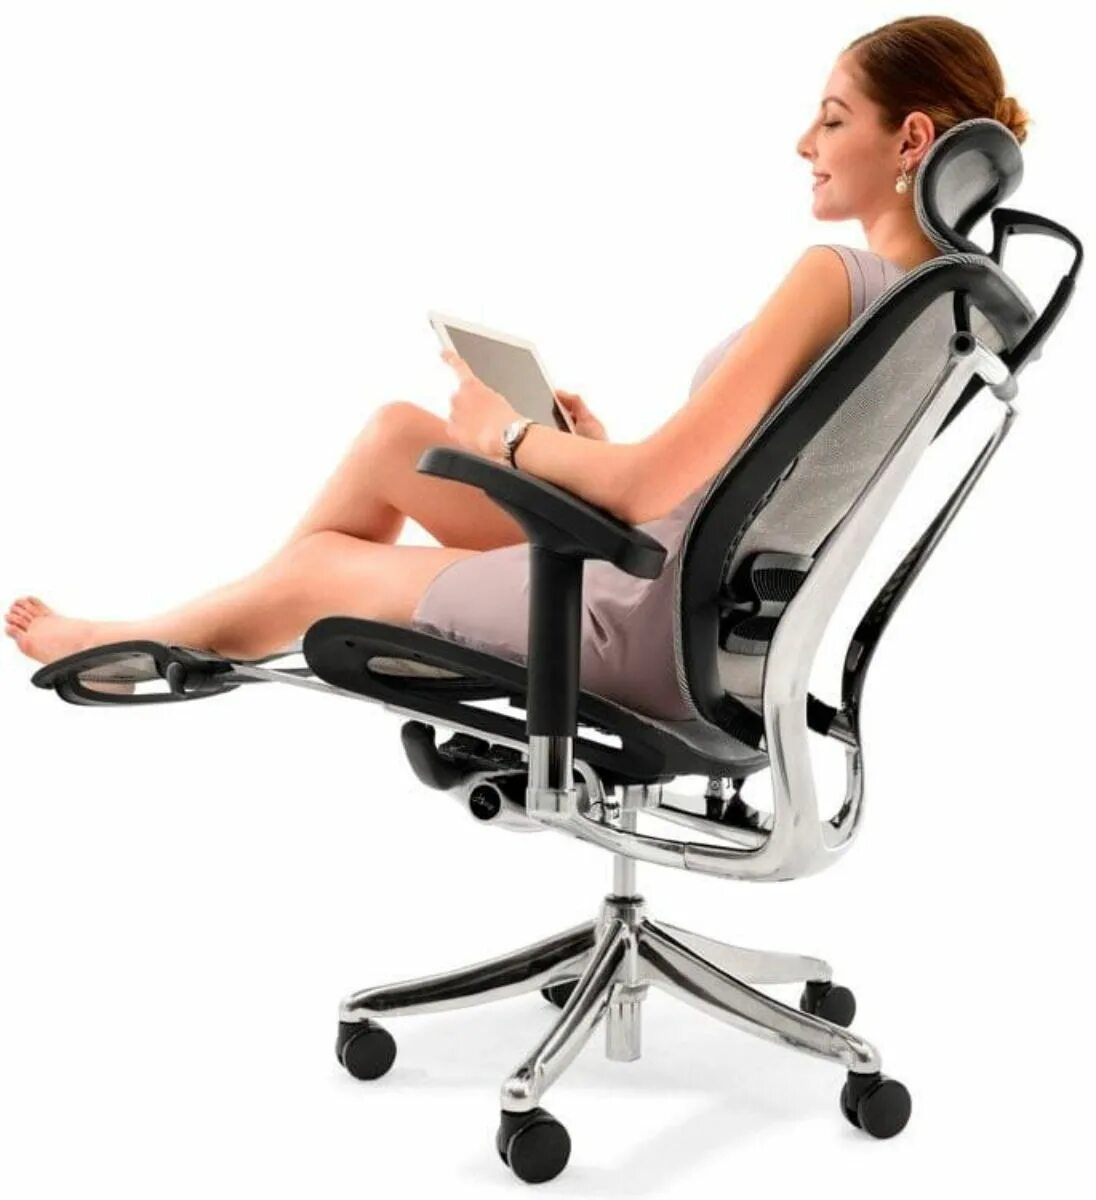 Expert Spring кресло. Кресло Арто ортопедическое компьютерное. Эргономичное кресло falto Expert Star. Кресло офисное компьютерное Space Seaton.